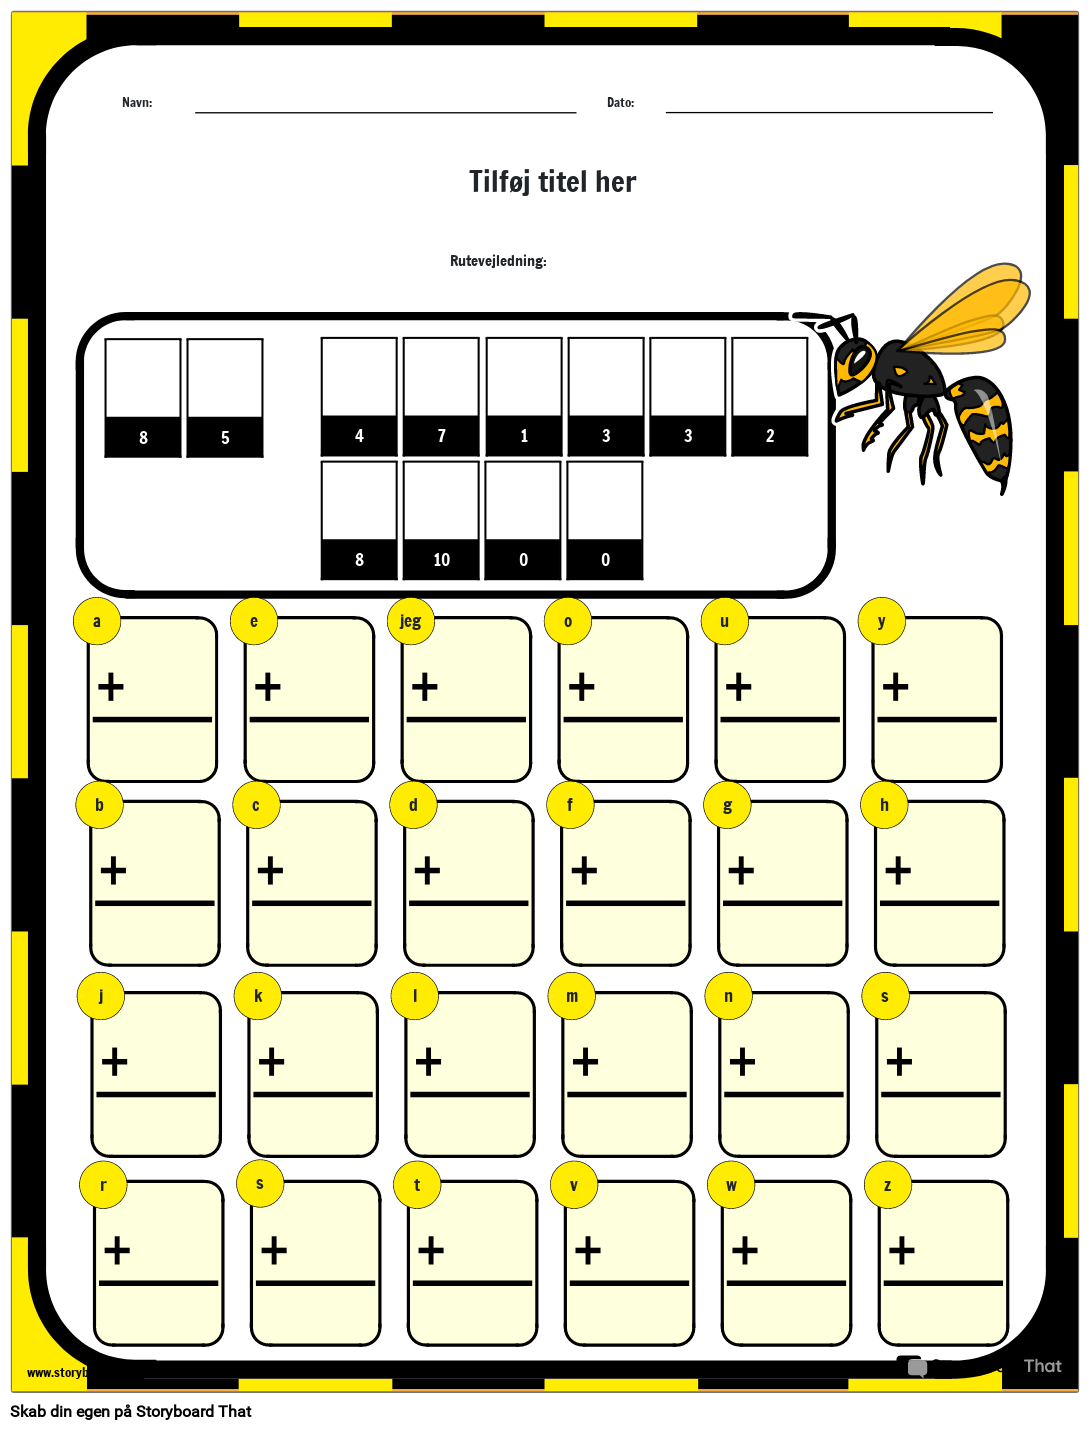 Hvordan går Bees i skole - Math Riddle Worksheet